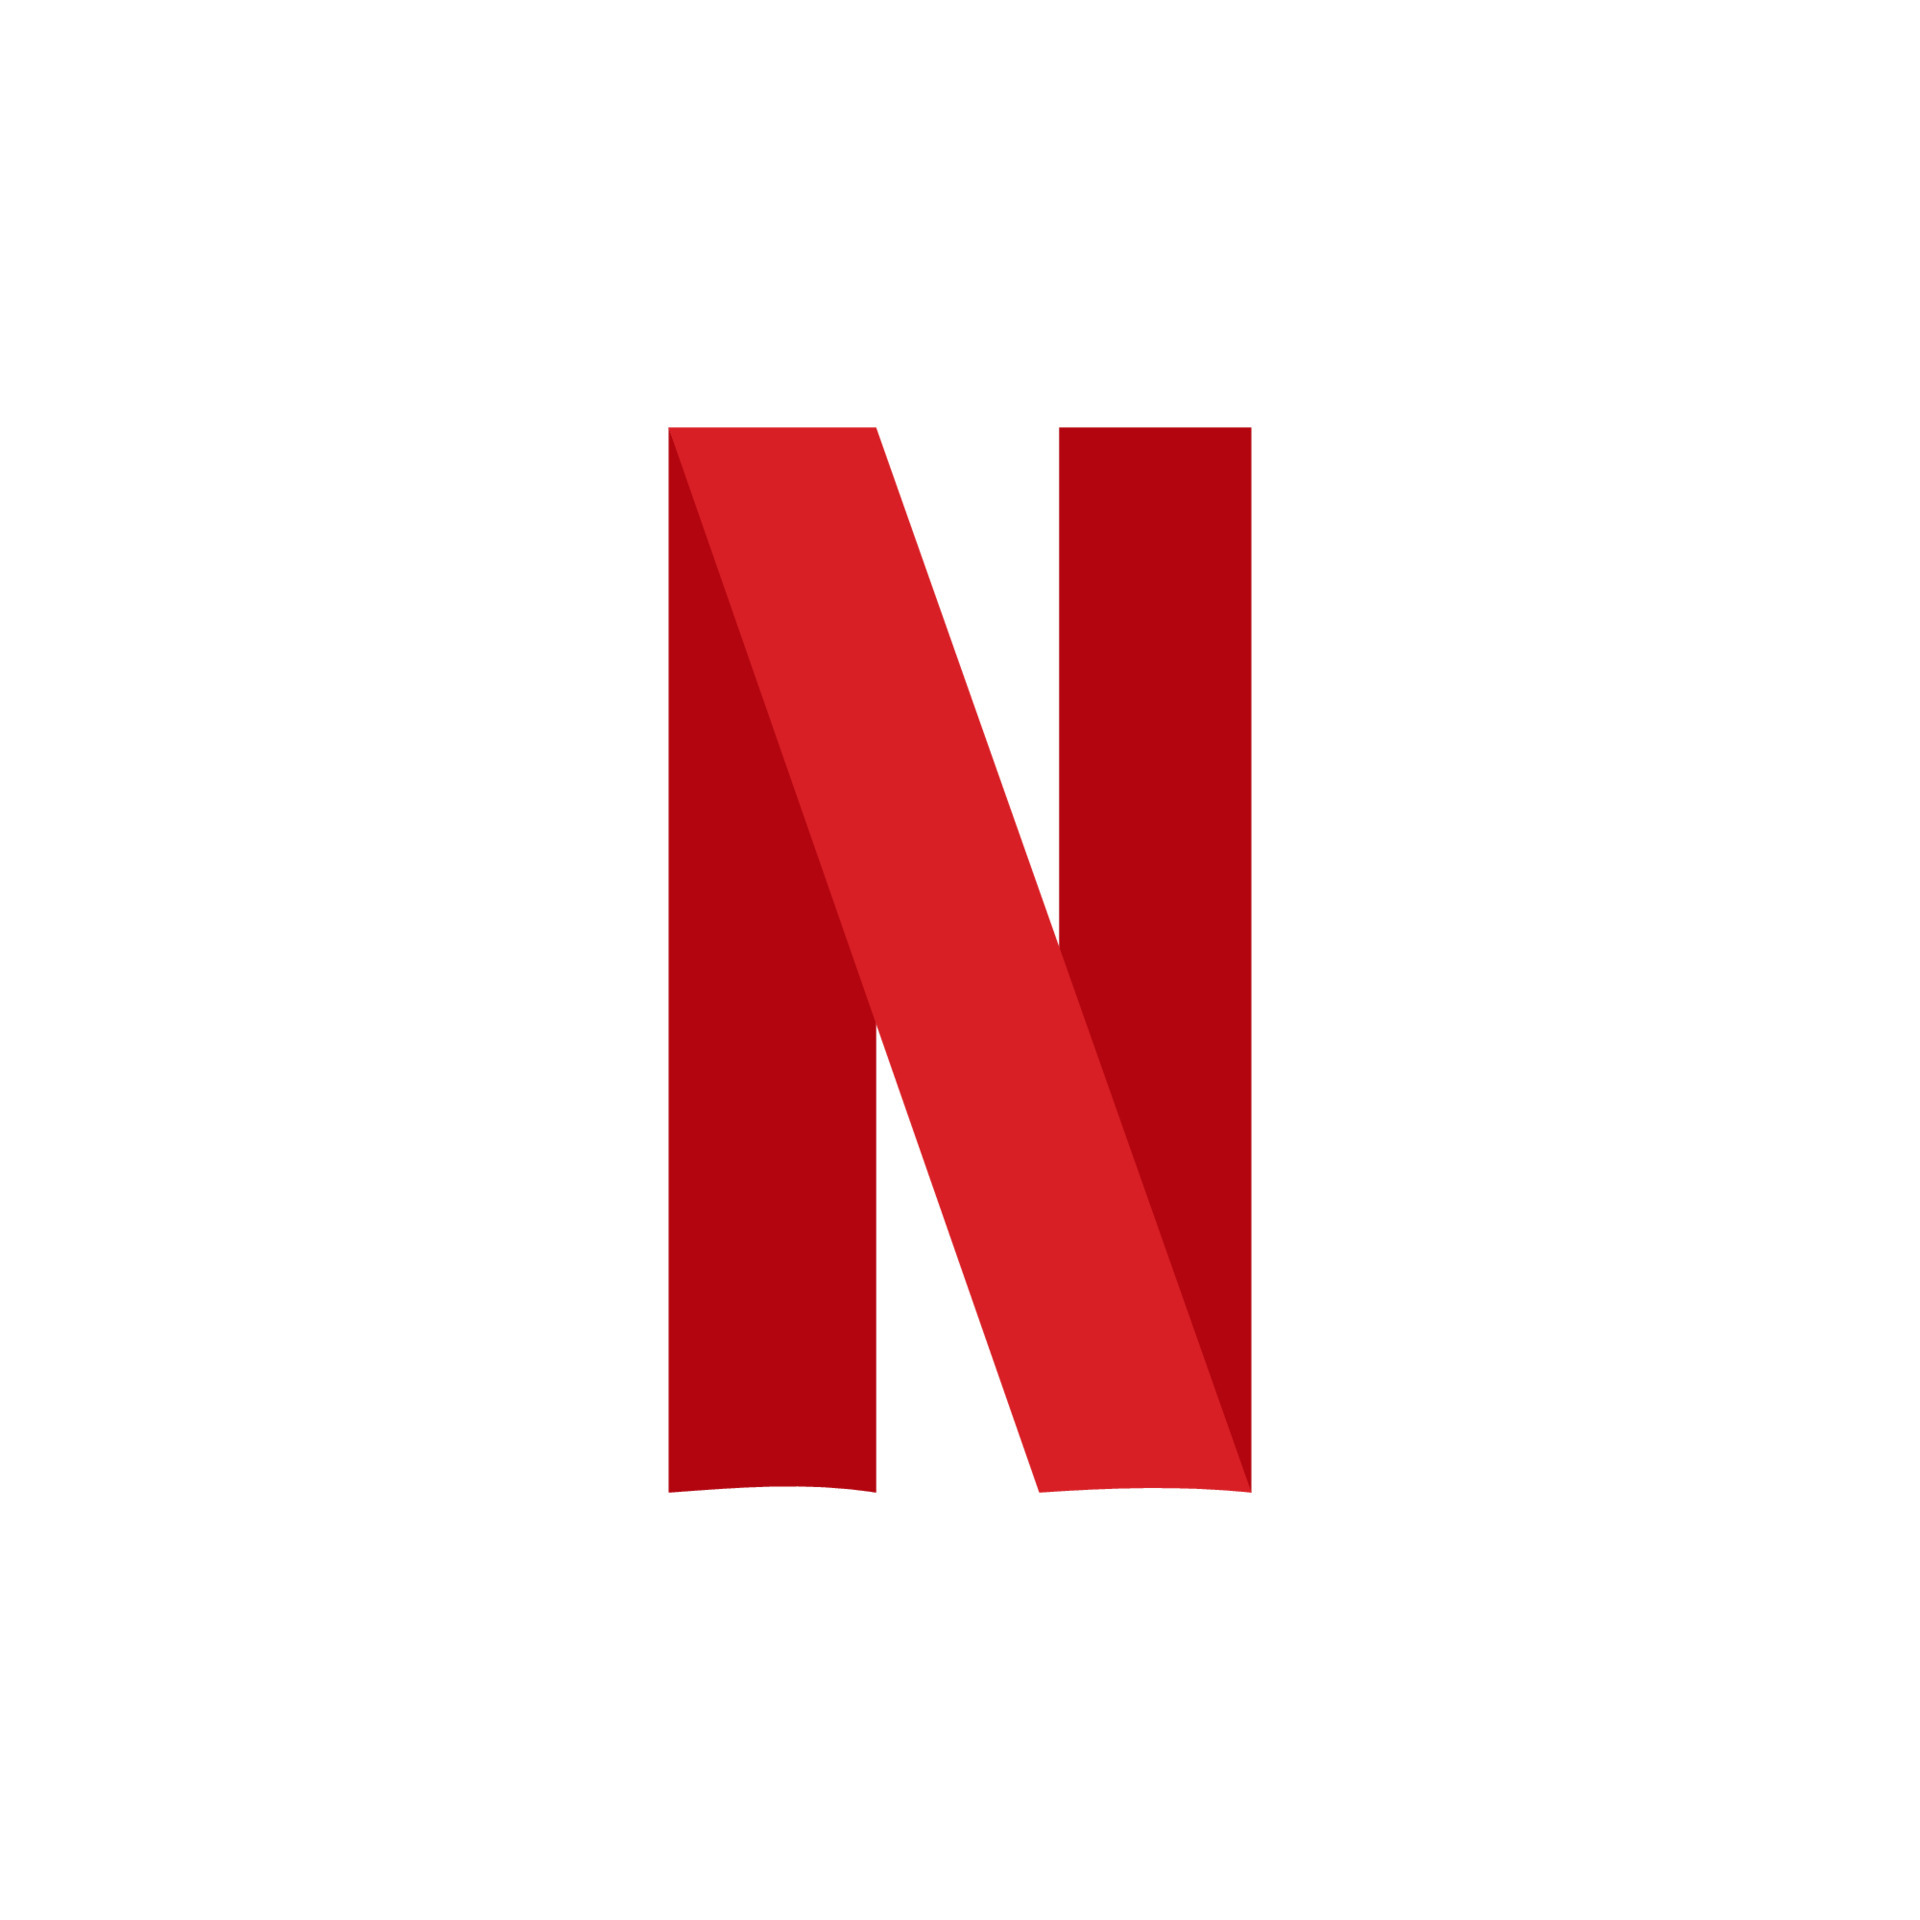 Icon logo Netflix vector trên nền trắng: Icon logo Netflix vector trên nền trắng sẽ giúp bạn tạo nên các sản phẩm đẹp mắt và chuyên nghiệp. Bạn có thể sử dụng icon này để tạo ra các sản phẩm về chủ đề Netflix, đưa ra cho người dùng trải nghiệm vui vẻ và thú vị.